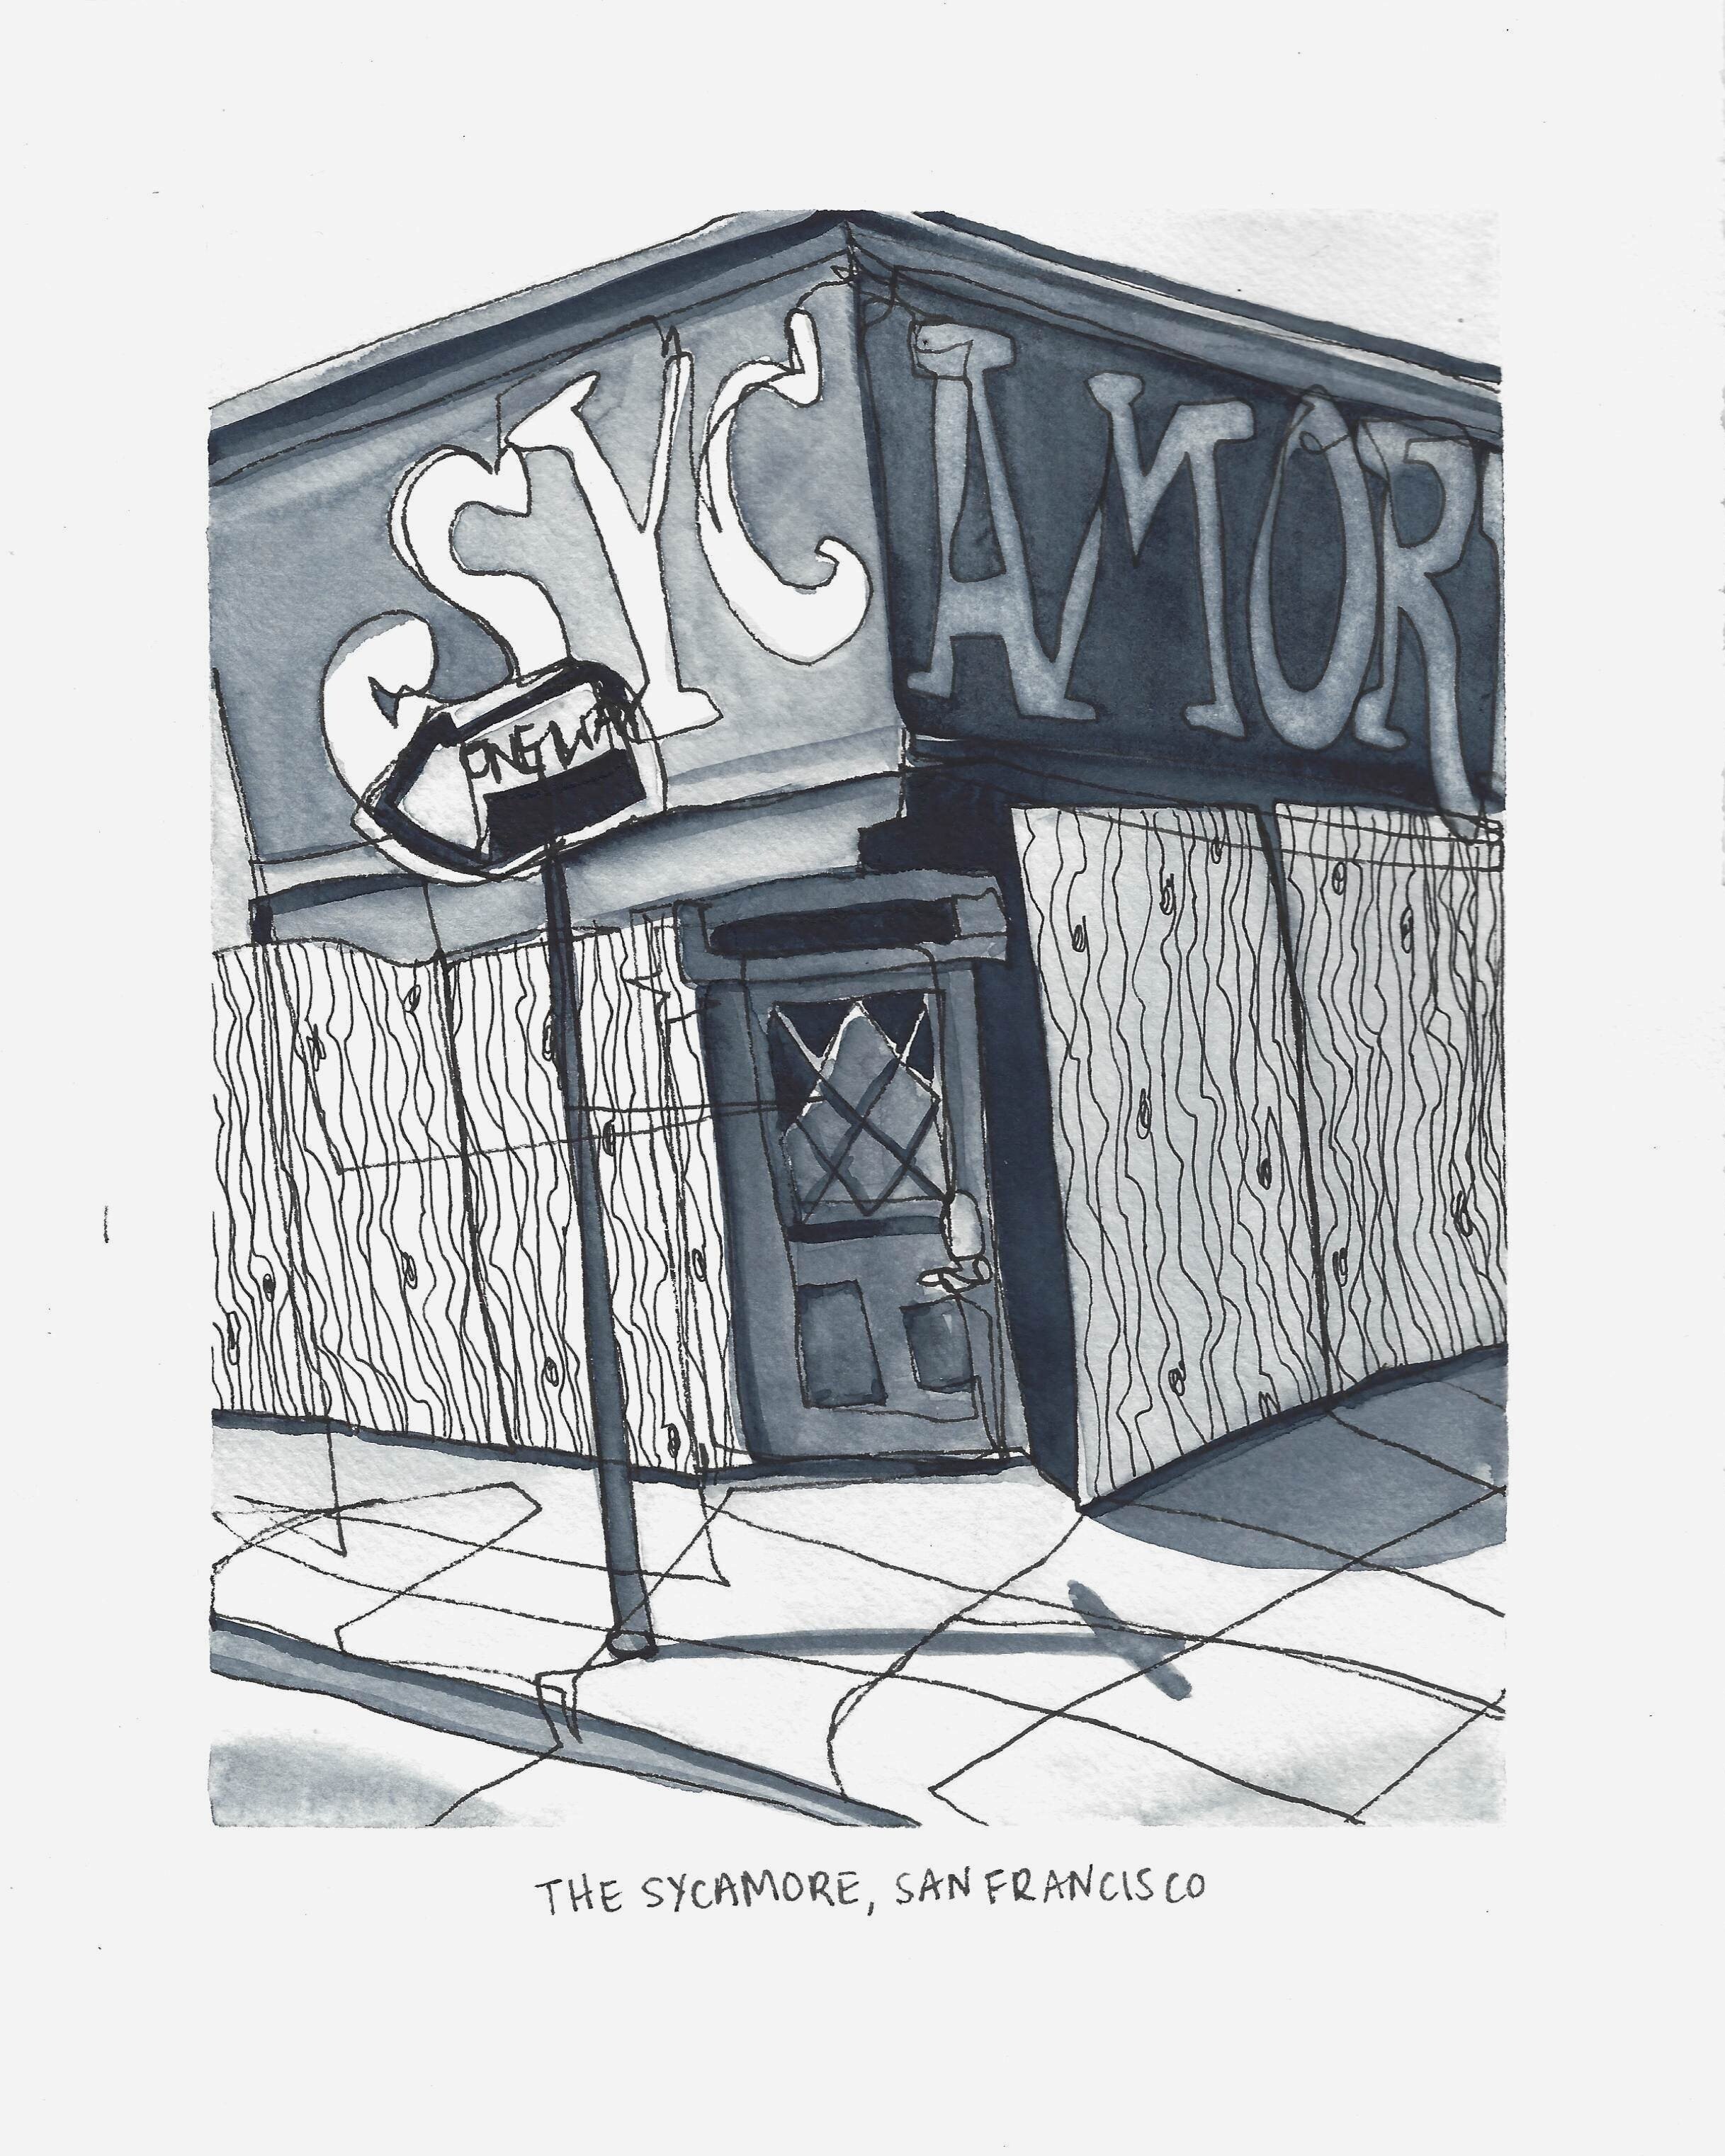 COVID-Closure Series; The Sycamore, San Francisco